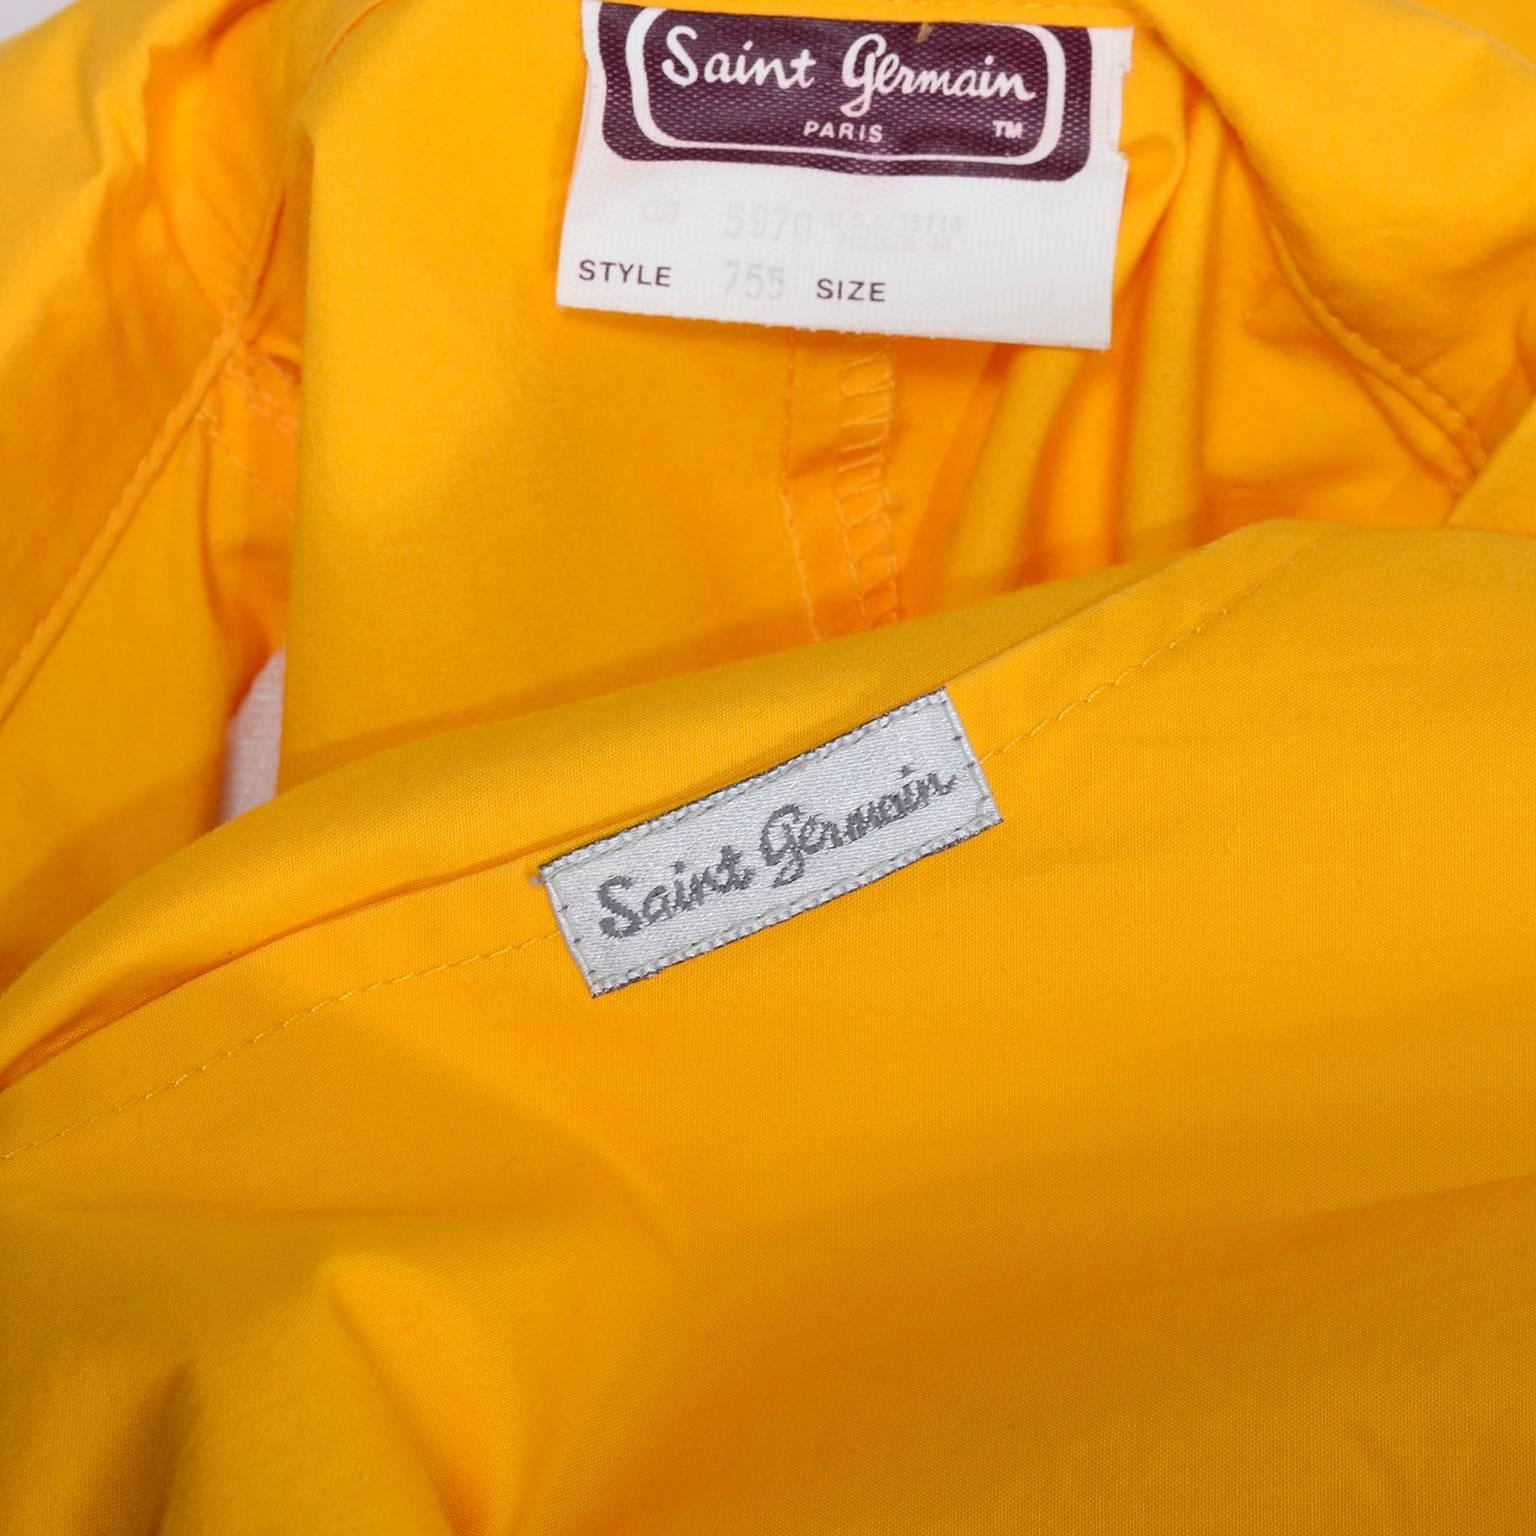 Women's 1980s Saint Germain Paris Vintage Jumpsuit in Yellow Cotton With Pockets 8/10